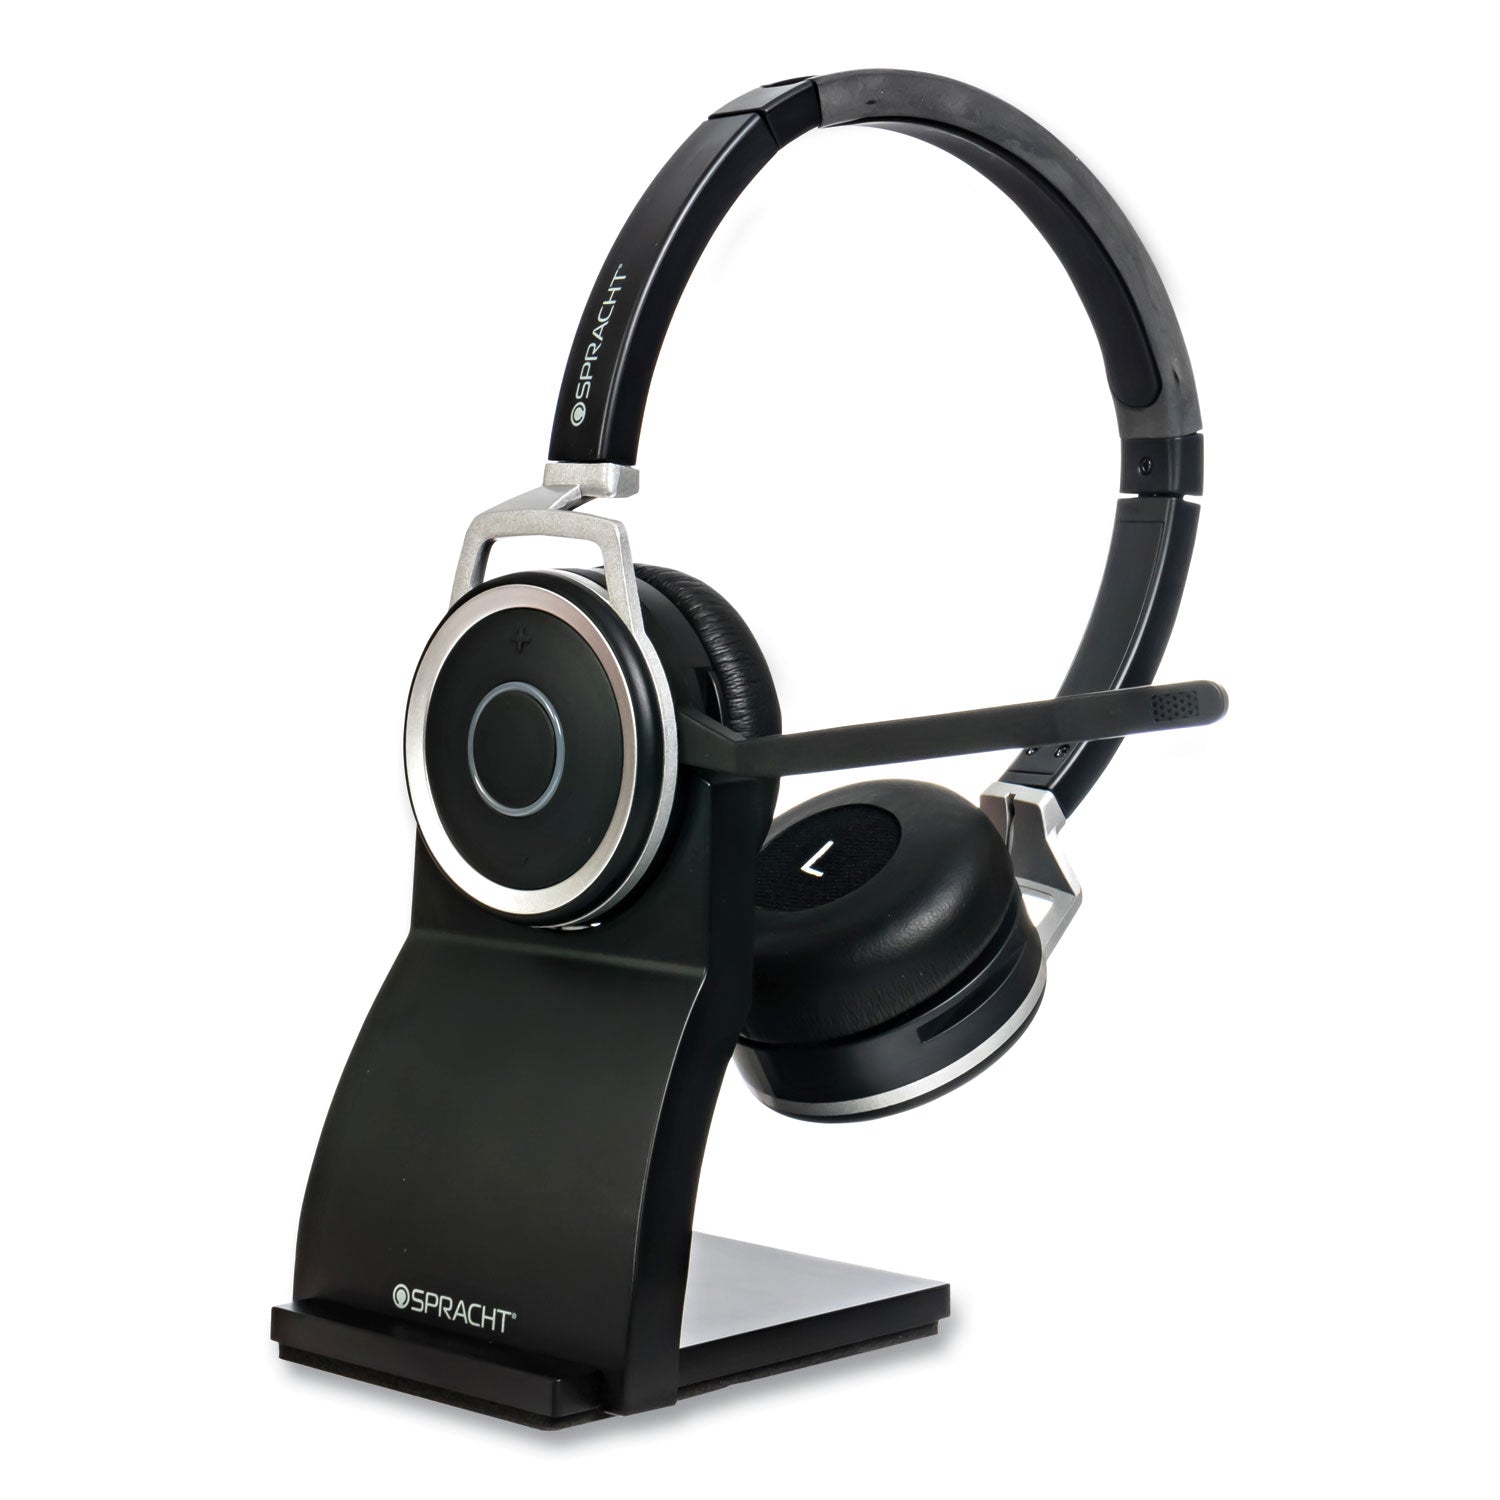 zum-bt-prestige-binaural-over-the-head-headset-black_sptzumbtp400 - 5